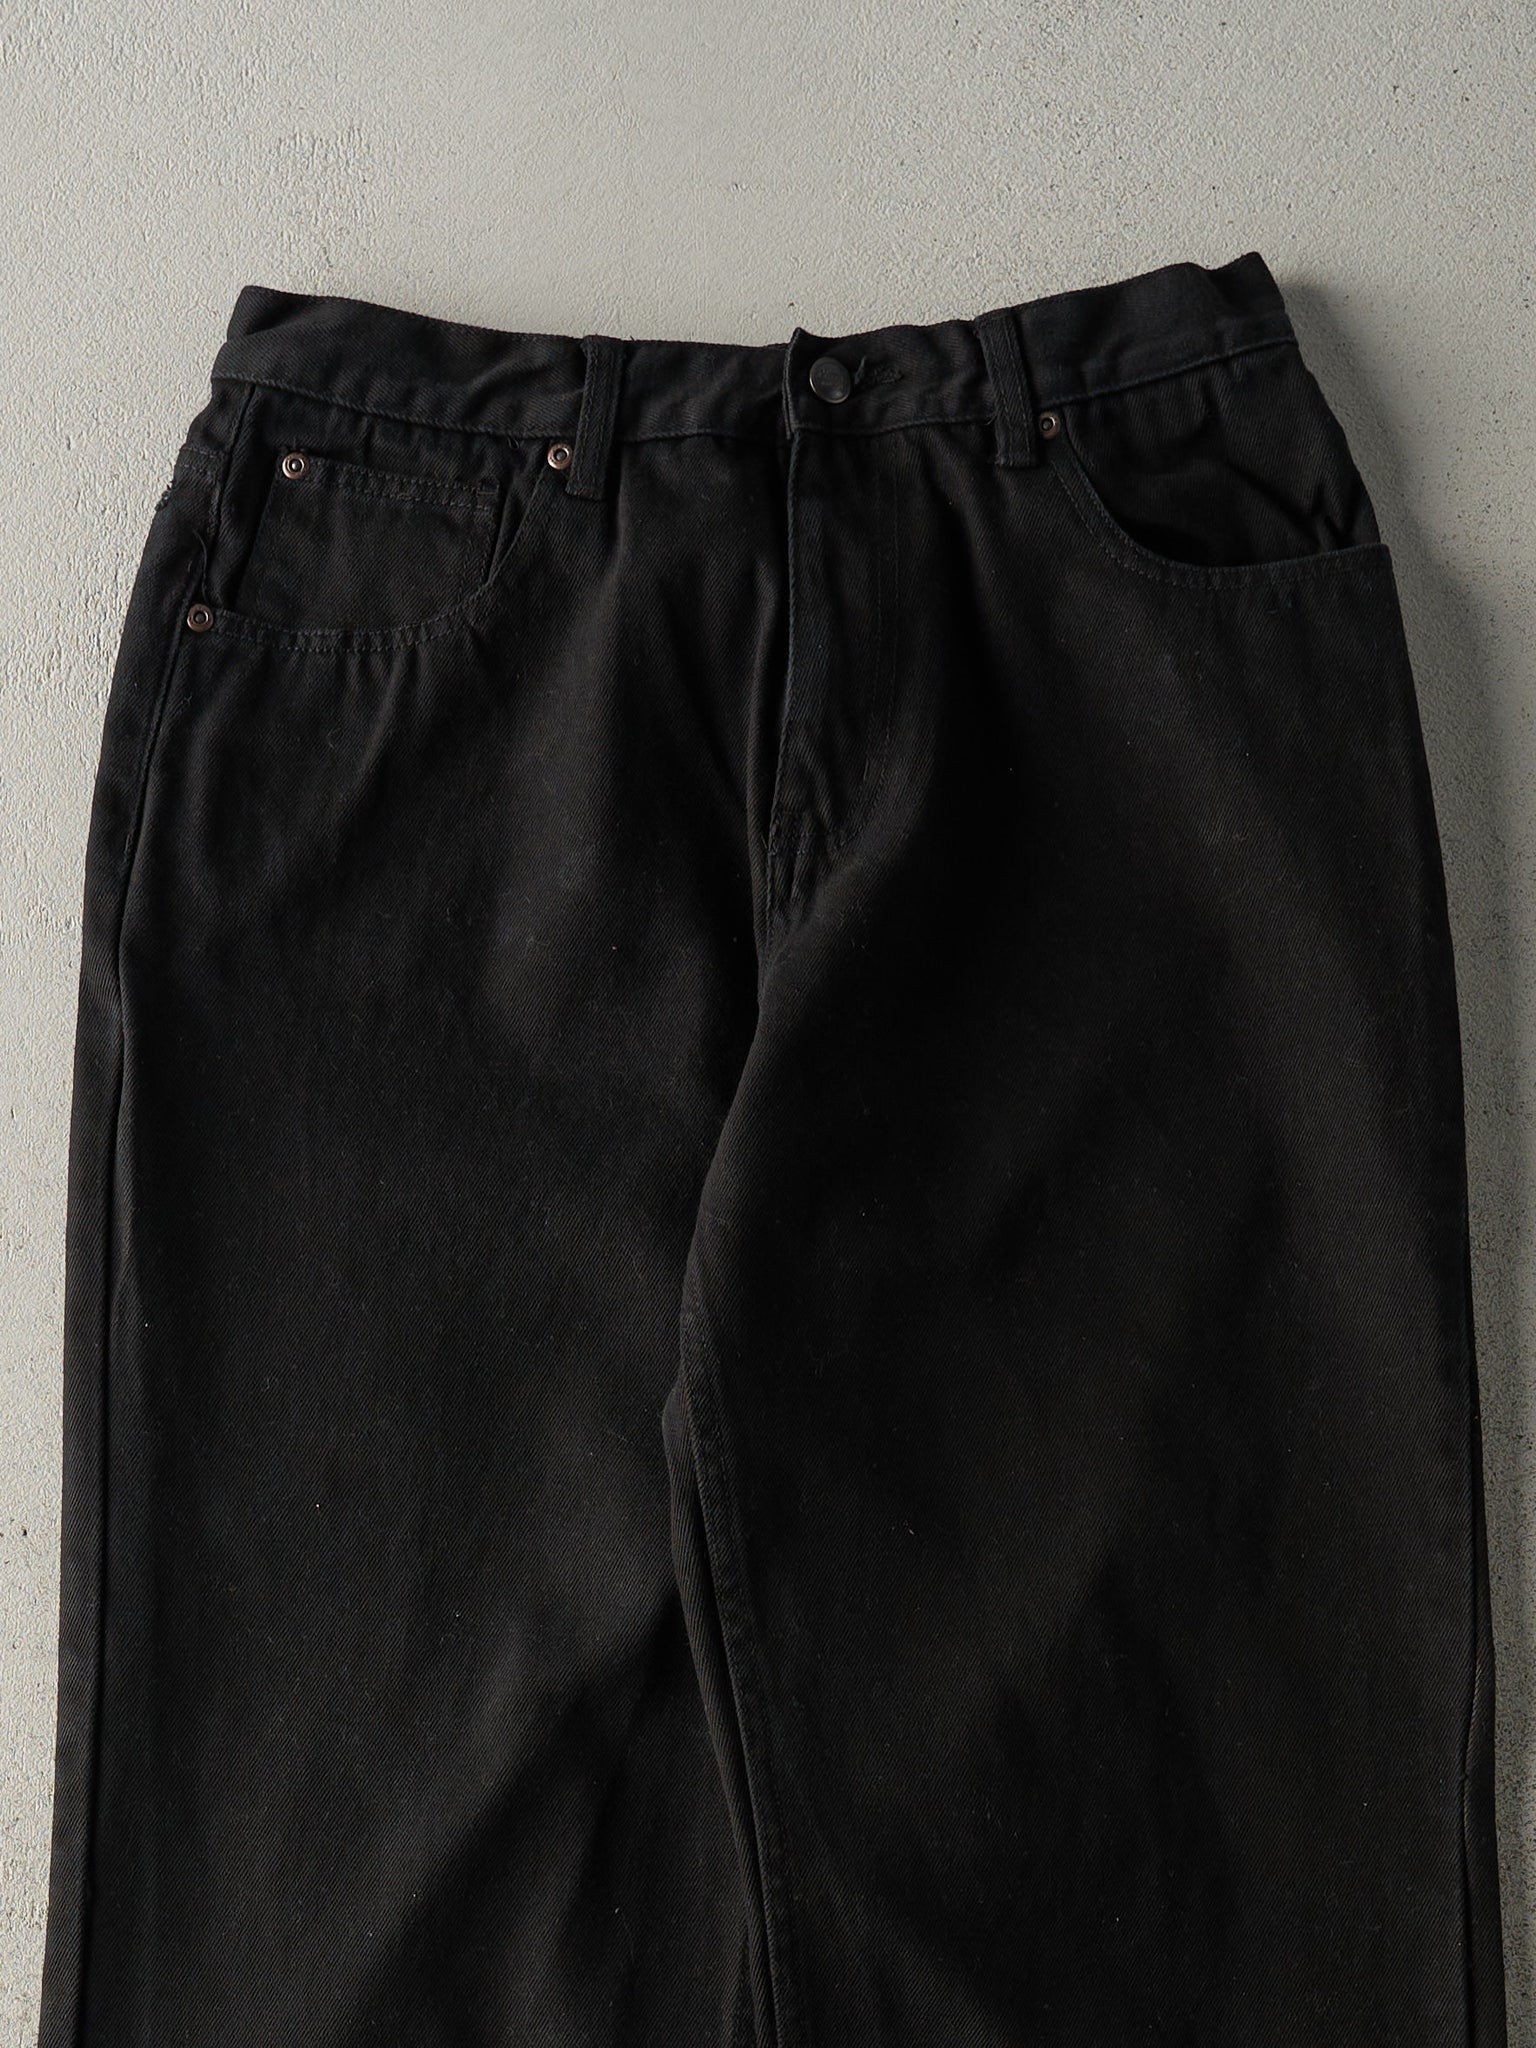 Vintage 90s Black Dickies Denim Pants (30x31.5)